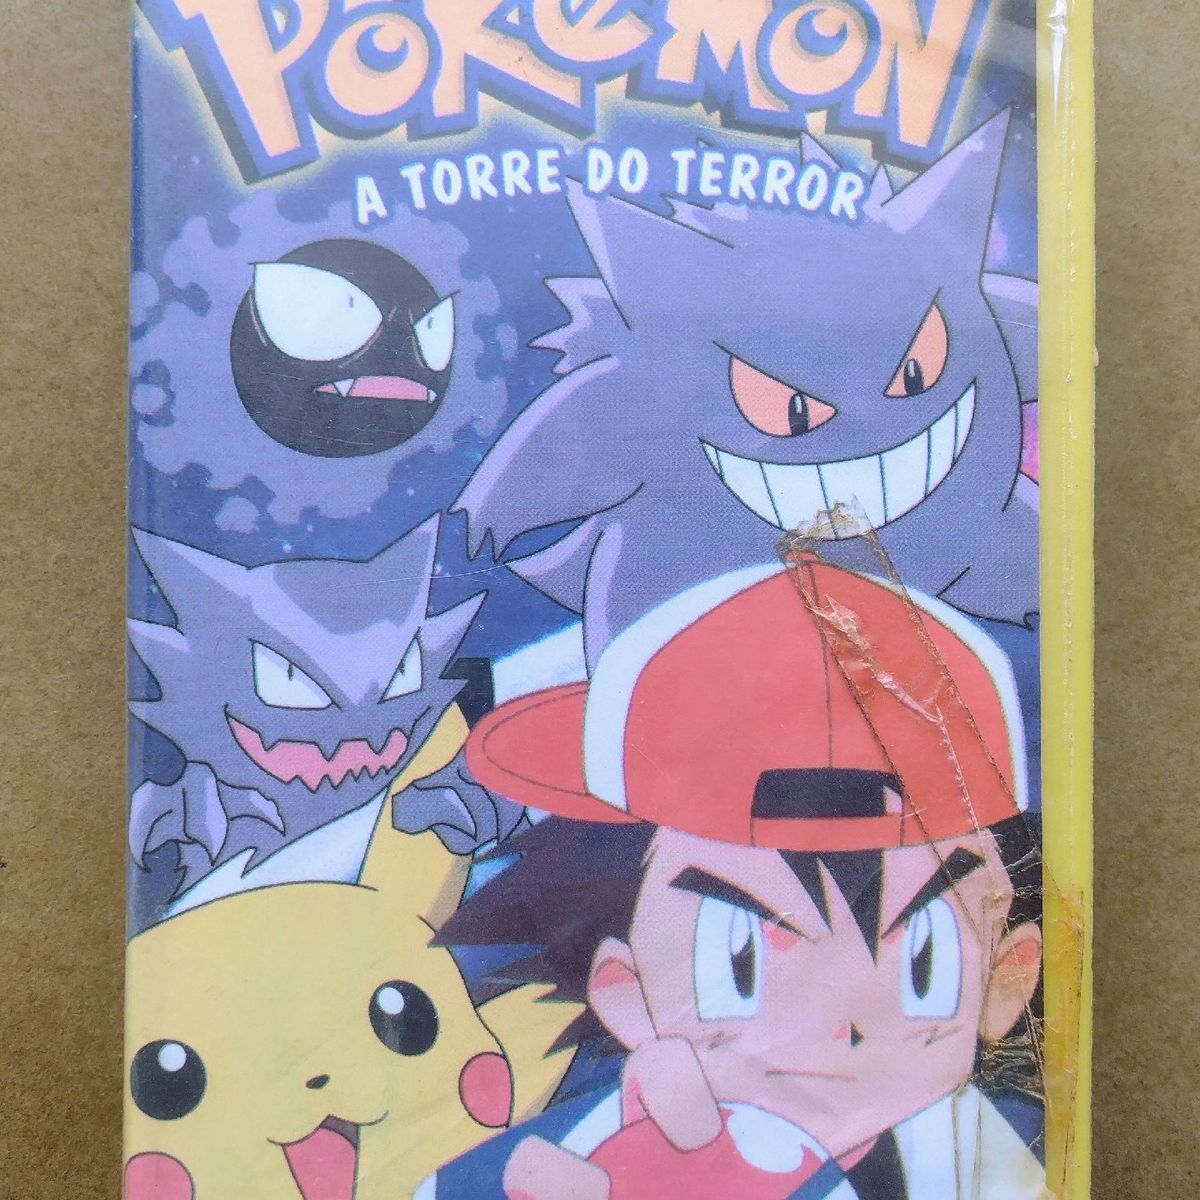 Fita VHS Pokémon - O Desafio do Samurai nº 2 Dublado Paris Filmes. Em  estado de